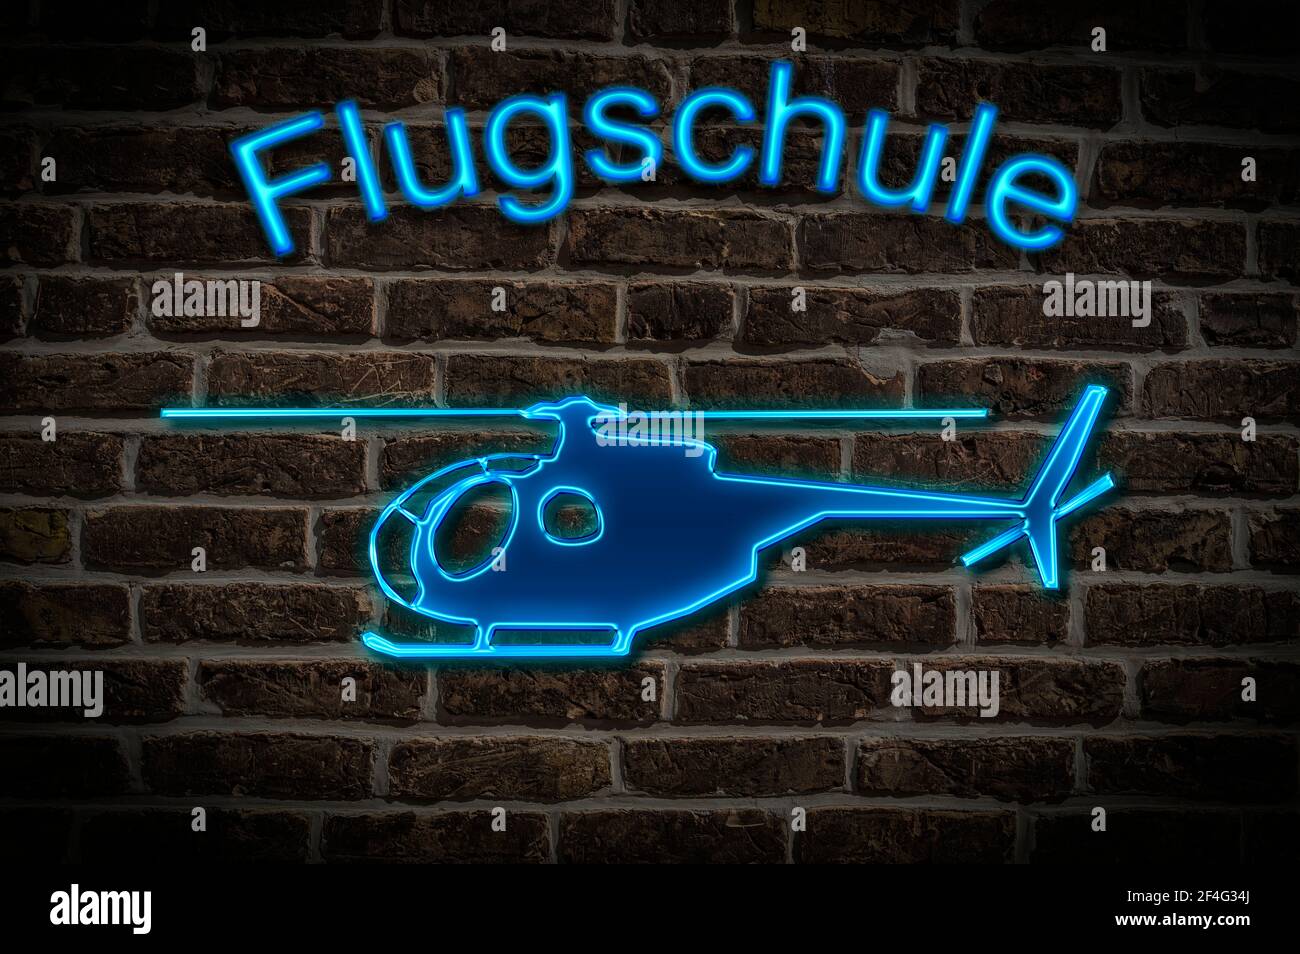 Leuchtreklame for a Flugschule a Hubrauber confind than the Neon-Schrift Leuchtwerbung für eine Flugschule ein Helicopt Stockfoto